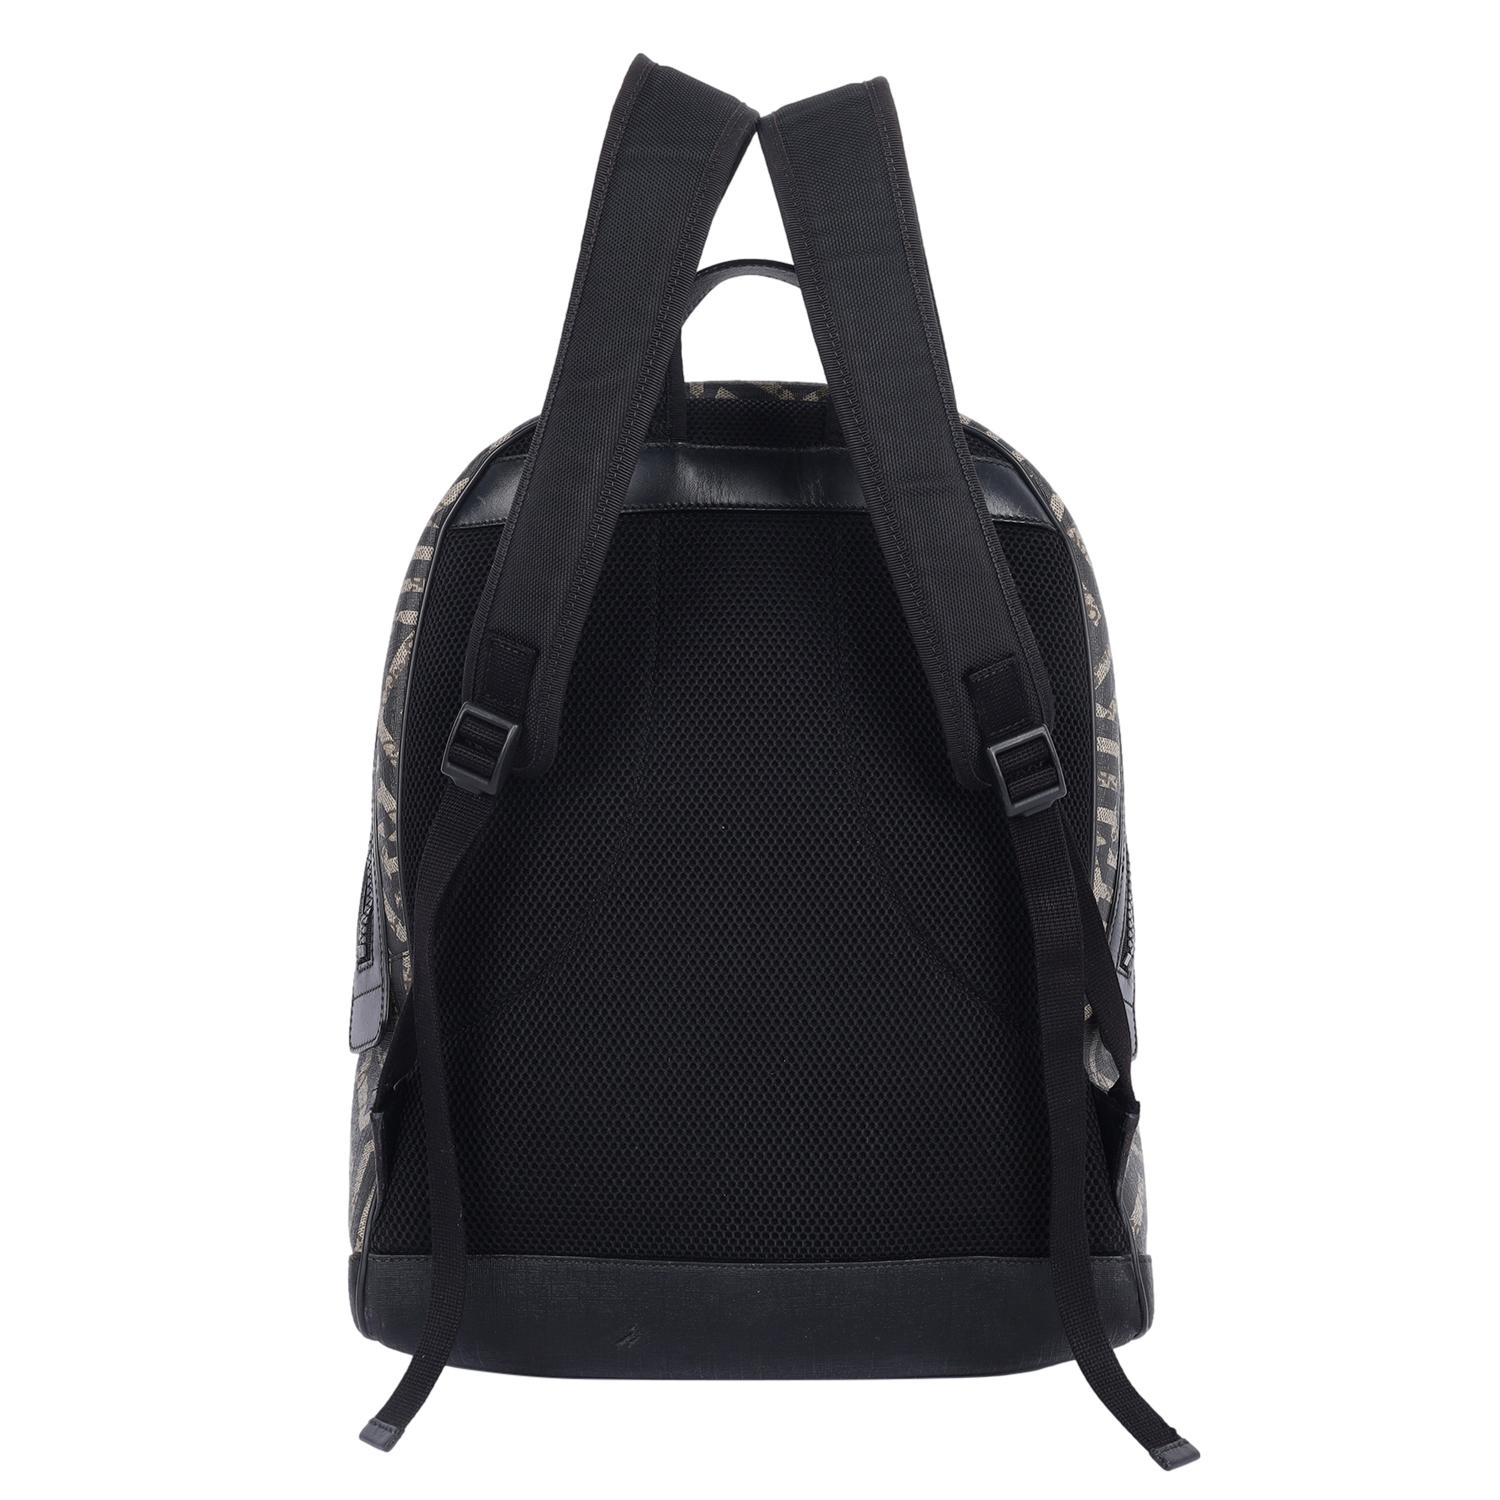 Echtes, gebrauchtes Gucci GG Supreme Monogram Caleido Backpack in Schwarz. Dieser modische Rucksack aus beschichtetem Segeltuch mit Gucci GG Monogram, einer Reißverschlusstasche auf der Vorderseite, einem Tragegriff aus Leder, gepolsterten